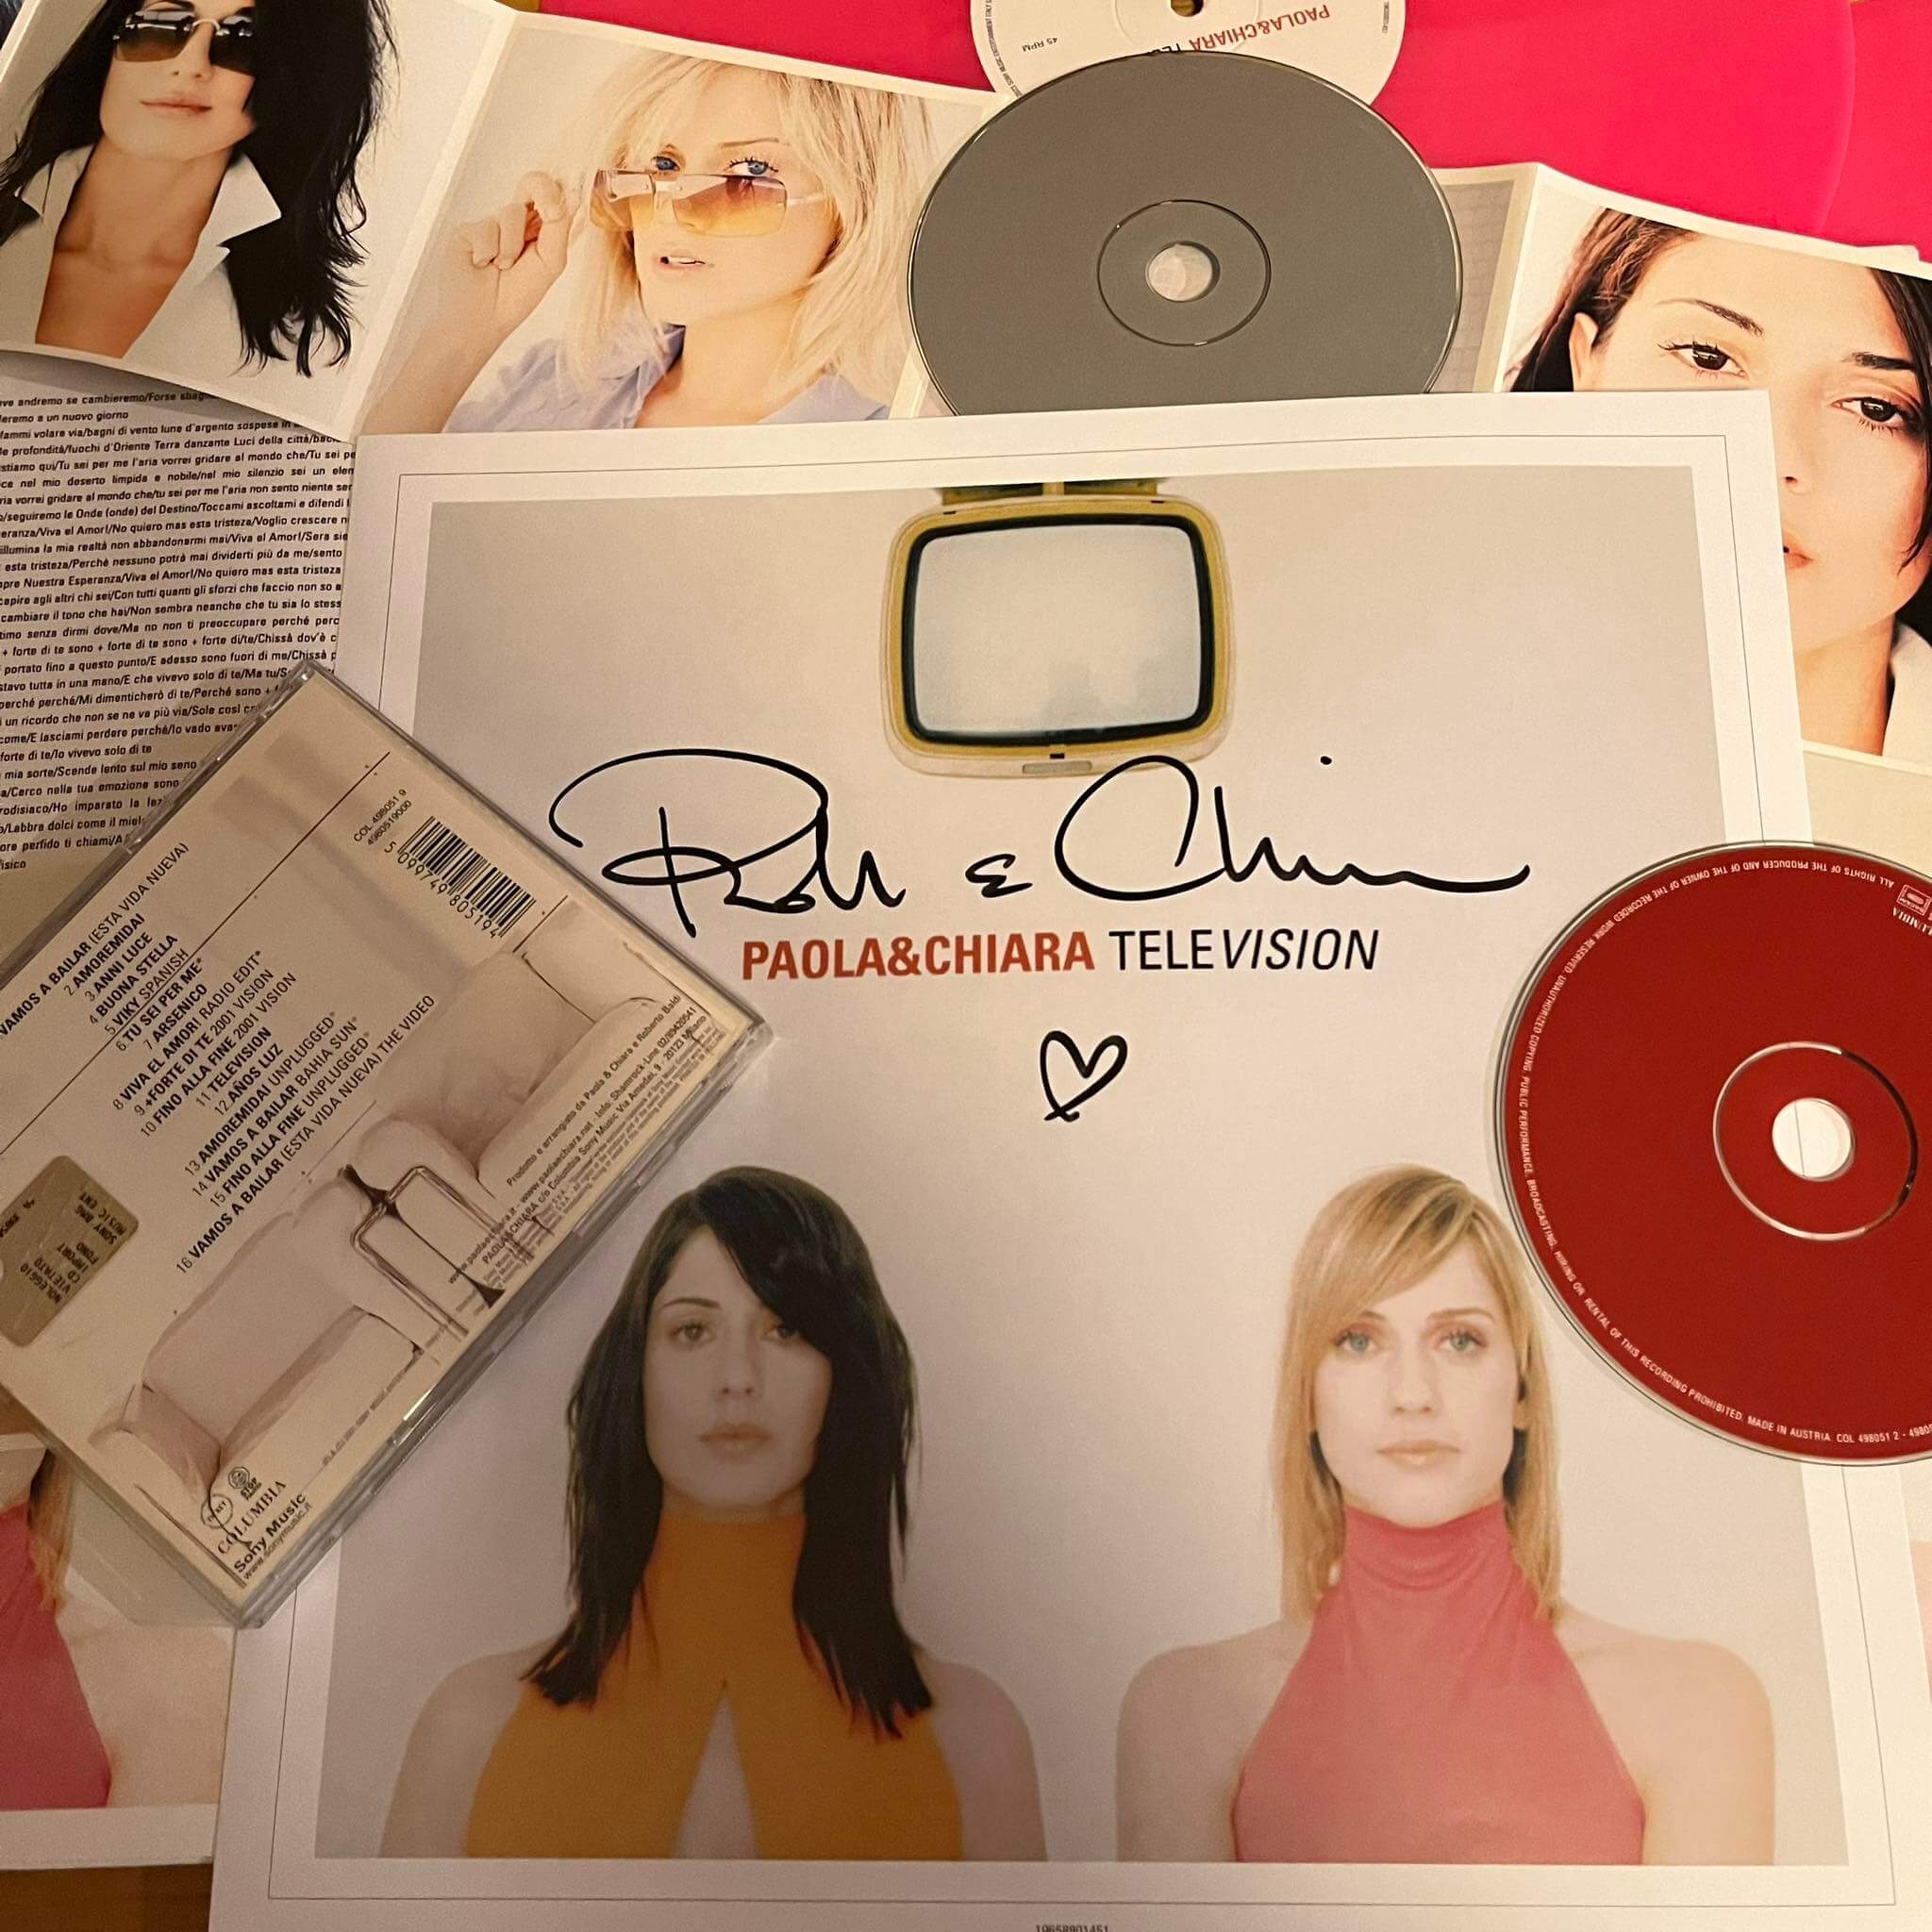 "Television" è il terzo album di Paola e Chiara pubblicato nel 2000